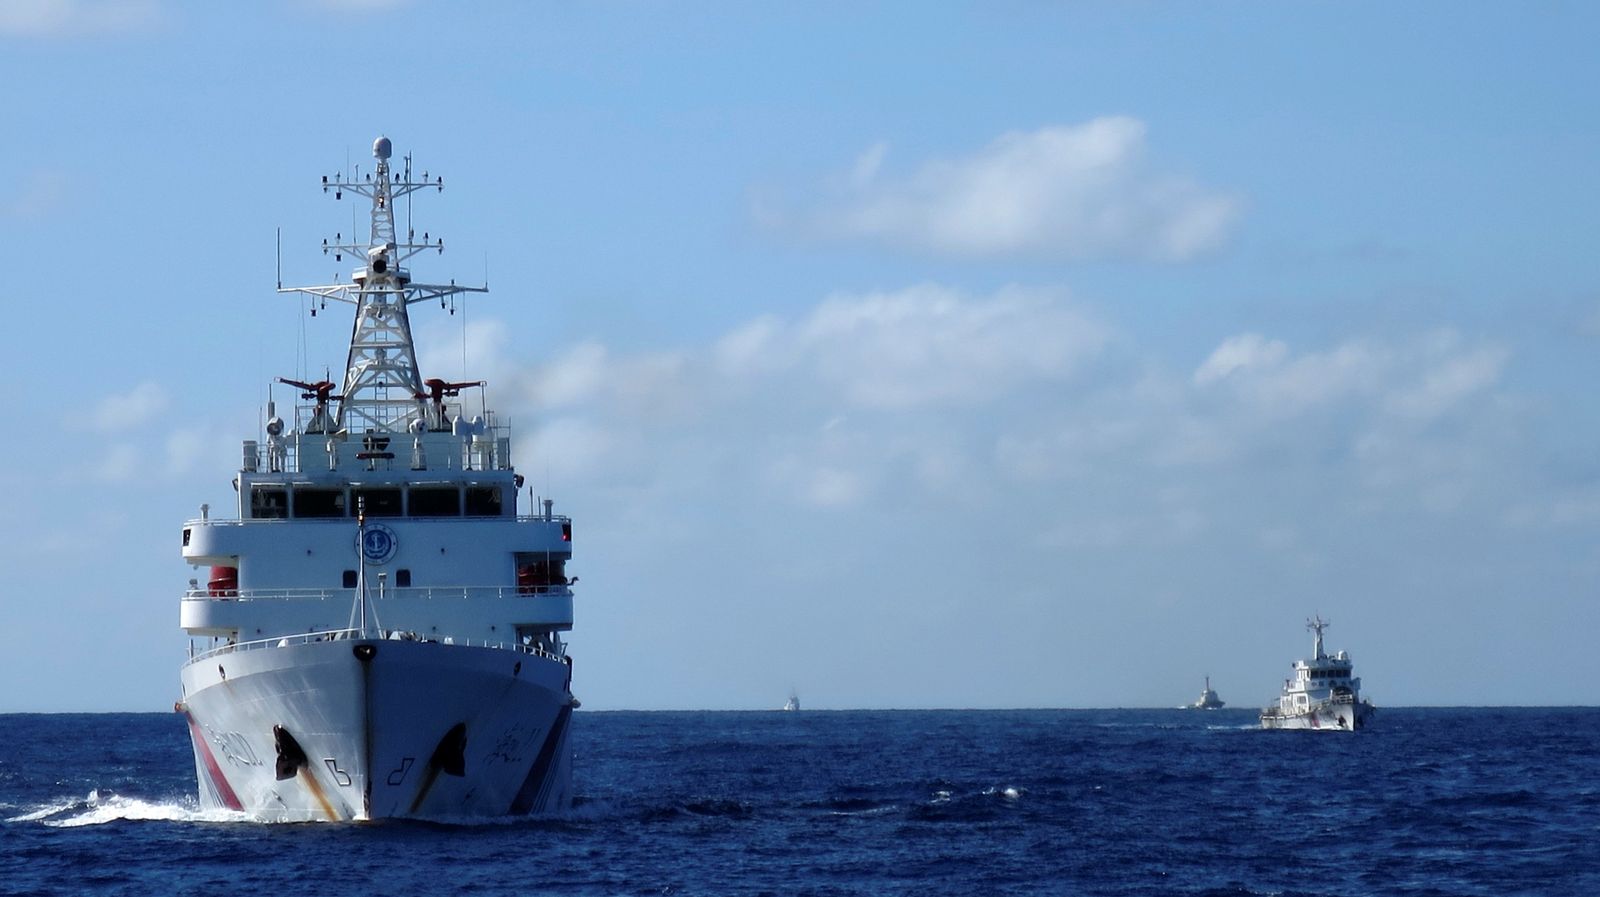 سفينة خفر سواحل صينية تطارد سفينة خفر سواحل فيتنامية في بحر الصين الجنوبي - 15 يوليو 2014 - REUTERS